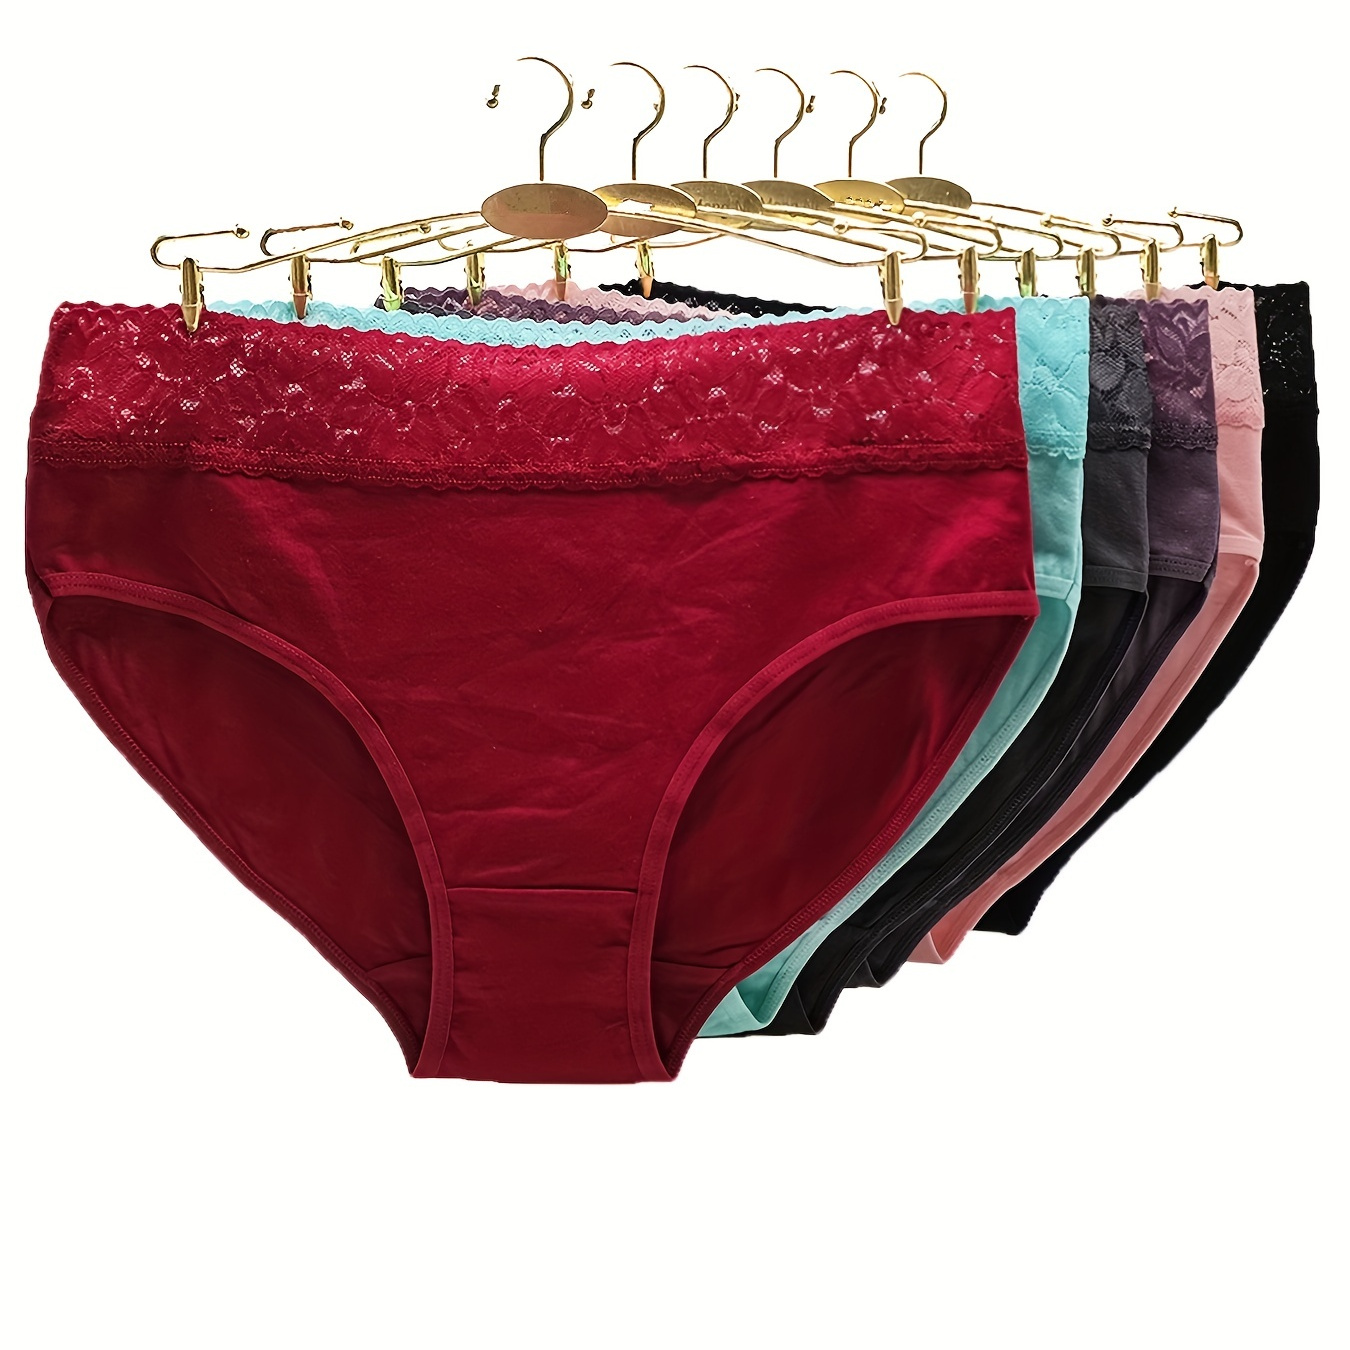 

6pcs Contrast Lace Briefs, Comfy & Breathable Mid-rise Intimates Panties, Women's Lingerie & Underwear